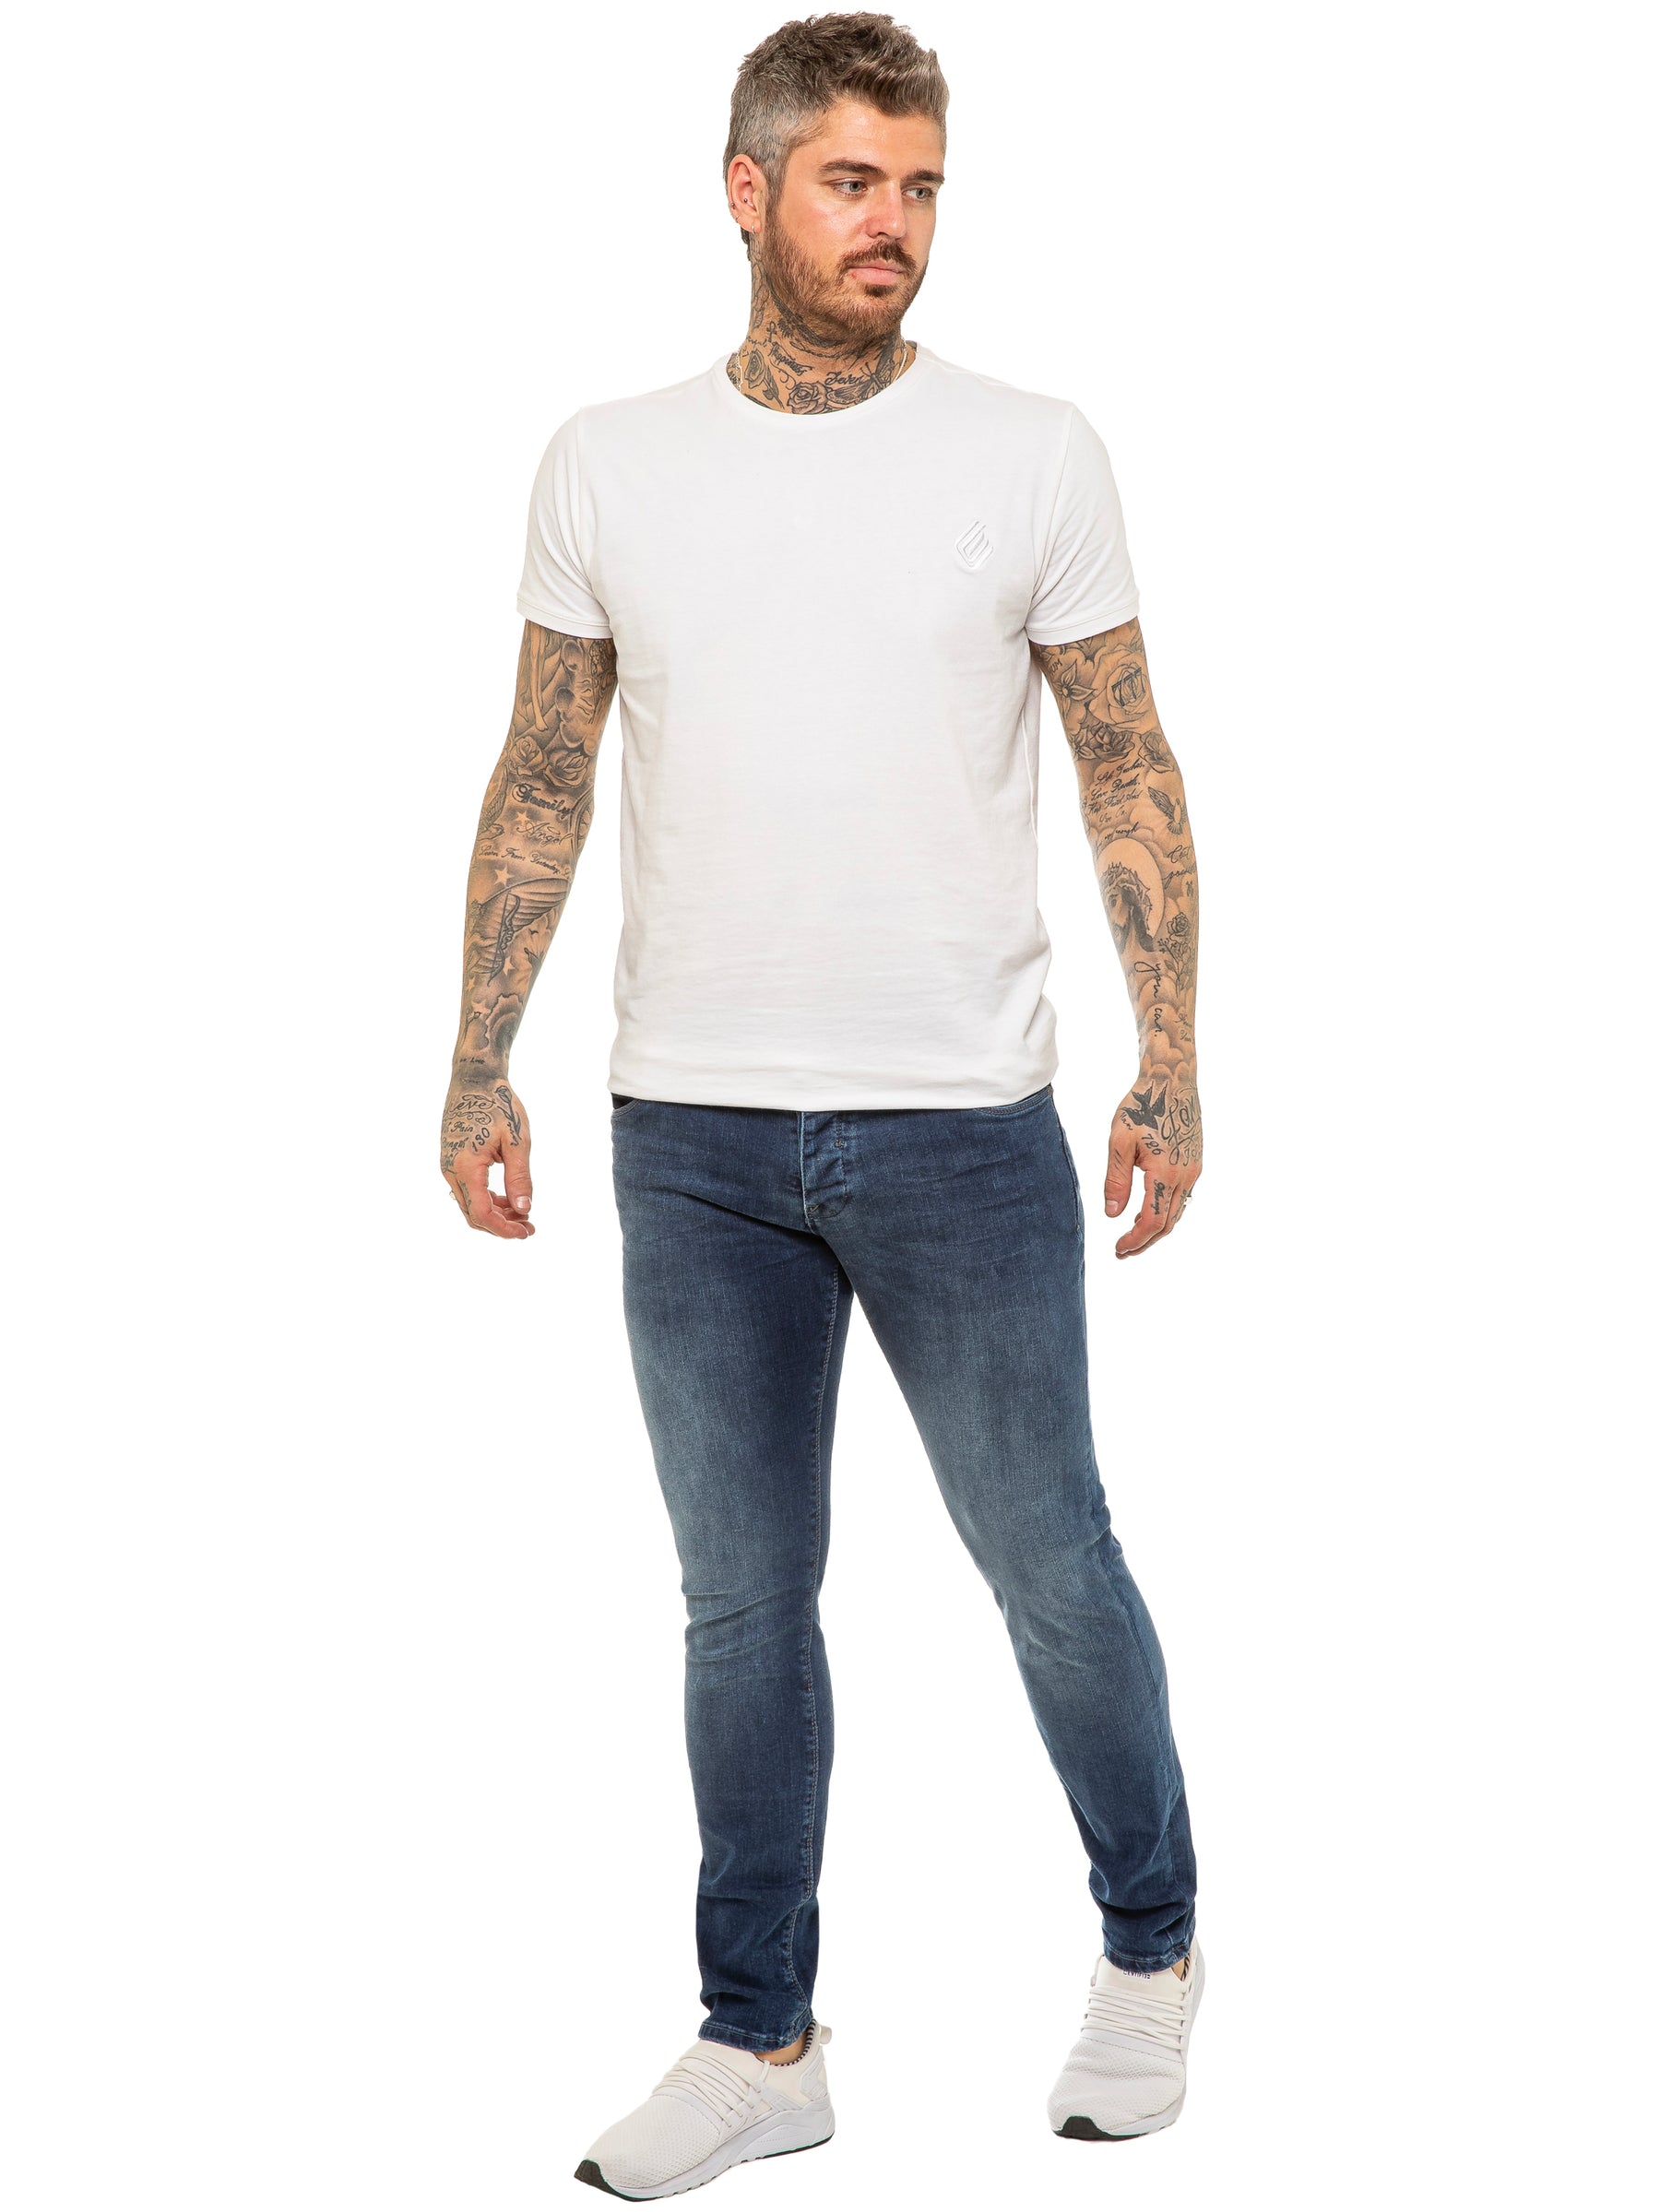 EM624 ETO | Mens Designer Basic Hyperstretch Blue Jeans ETO RAWDENIM